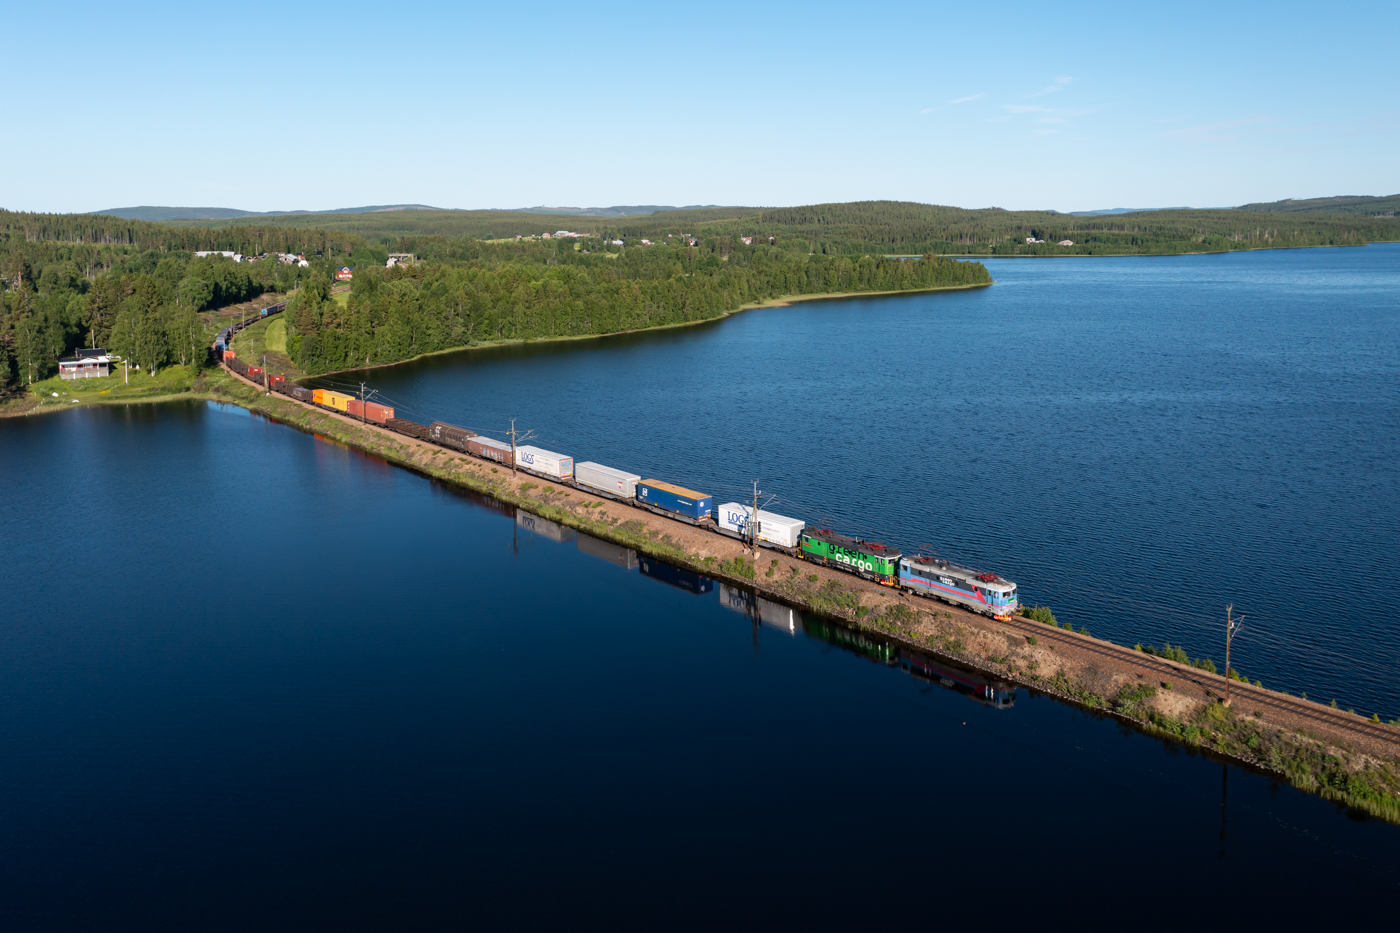 Morgens fahren auf der Stambanan genom övre Norrland mehrere Güterzüge in  dichter  Taktfolge, d.h. rund 10 Güterzüge in 4 Stunden, in Richtung Norden. Durch das Fahren in solchen Bündeln lässt sich die Leistungsfähigkeit der eingleisigen Strecke erhöhen. Nachmittags und in der Nacht fahren dann Güterzüge überwiegend in Richtung Süden. Den Anfang der morgendlichen Rushhour macht am 24.06.2022 der Green Cargo 4318, der soeben den kleinen Bahnhof Björnsjö durchfahren hat und nun den See Björnsjön überquert.